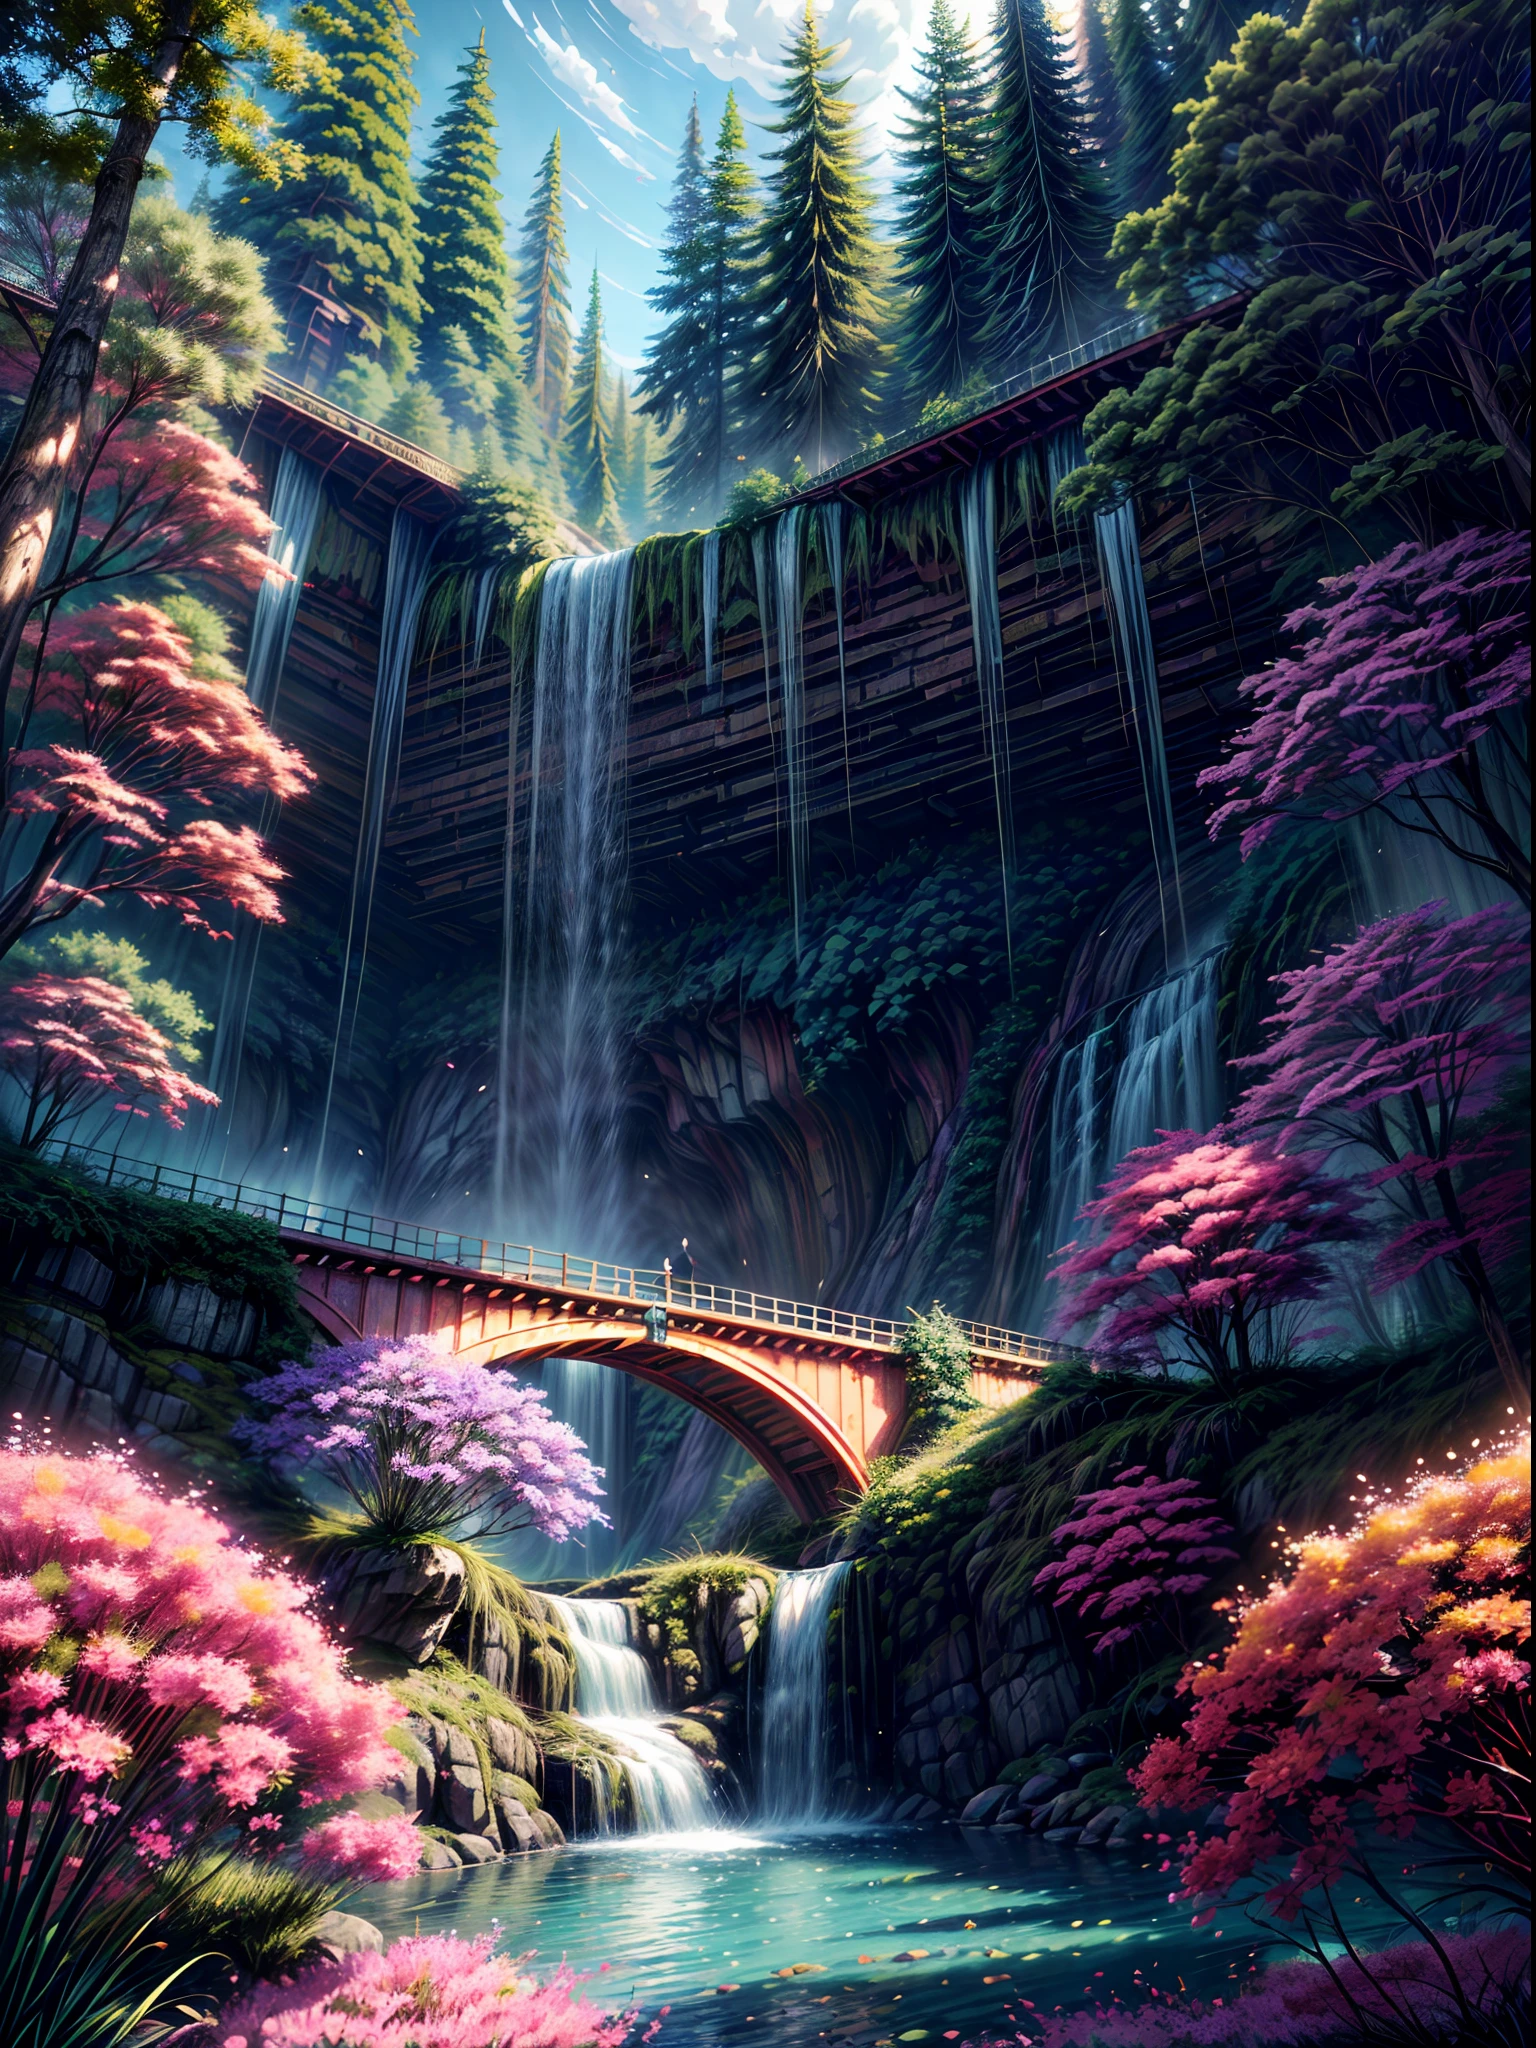 A beautiful bio龐克 waterfall in nature, 豐富多彩的, 花朵, 松樹, 一座悬索桥, 龐克, 比普爾.